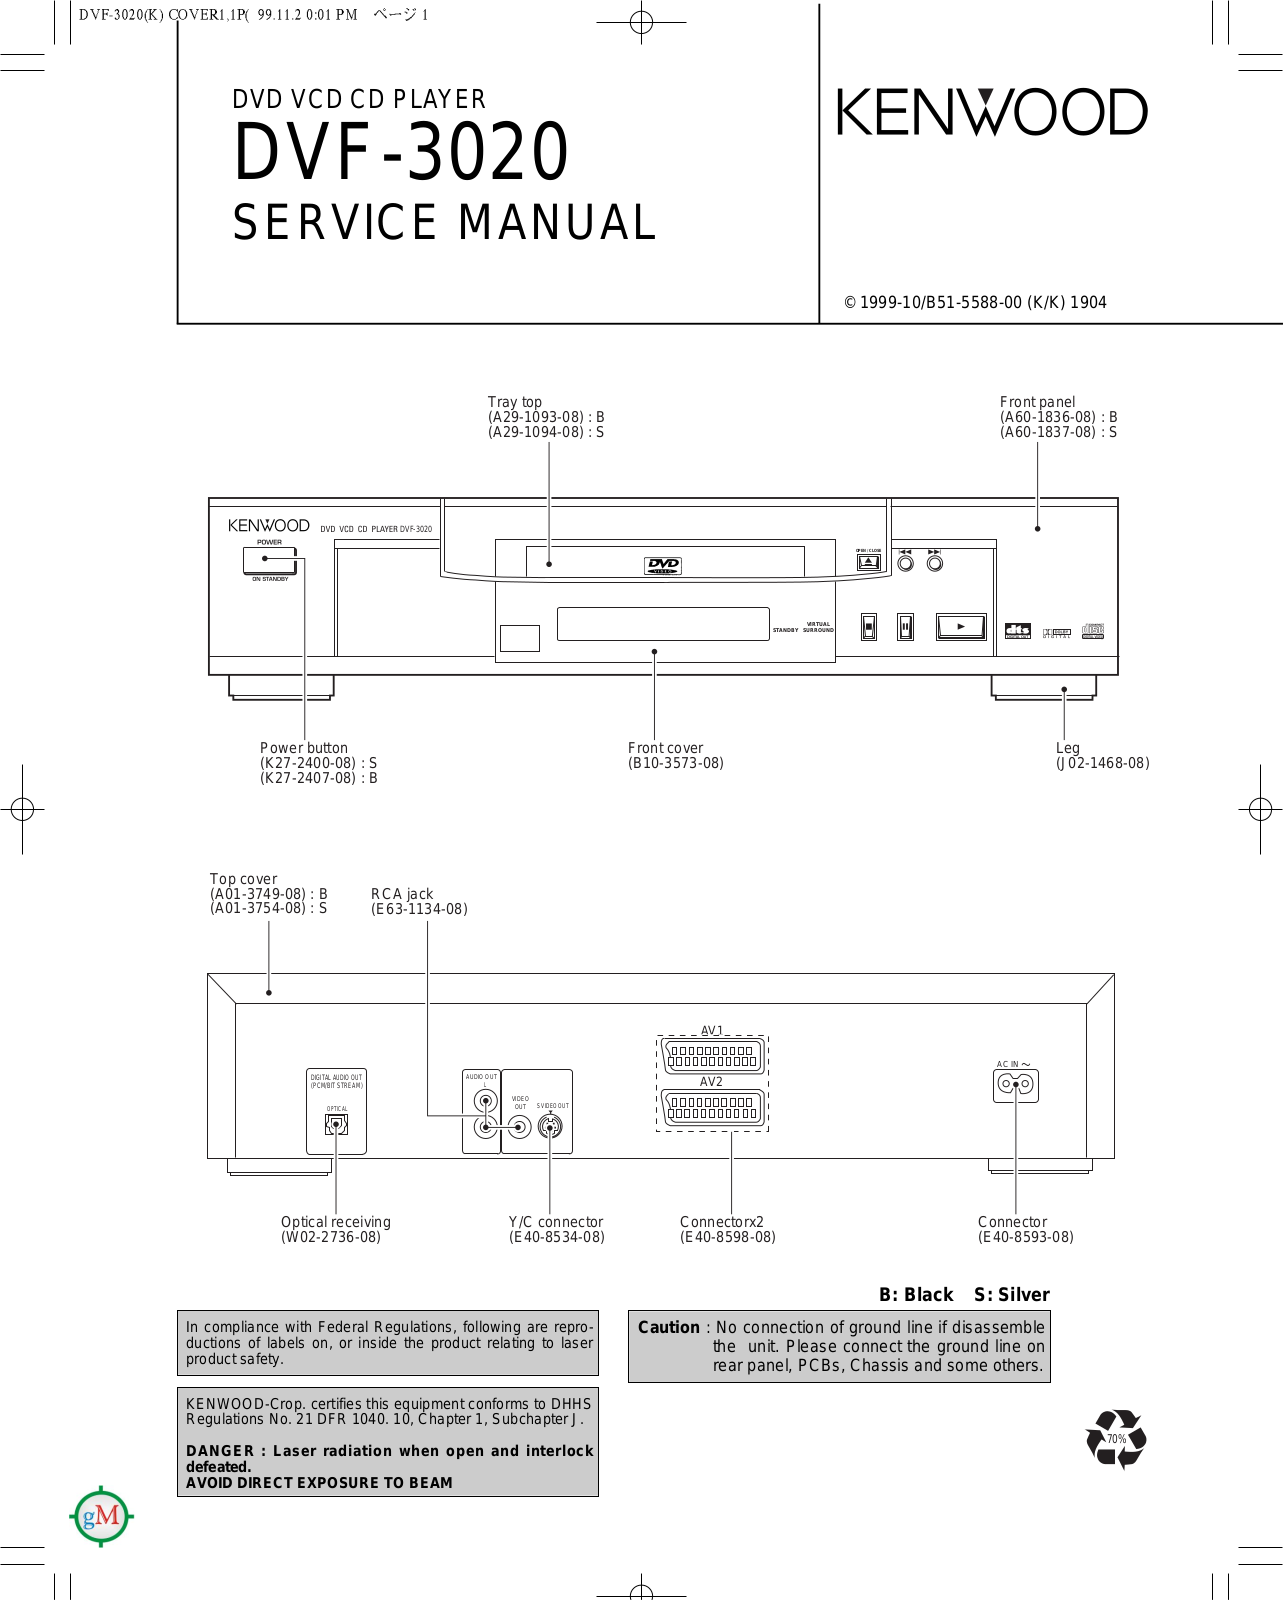 Kenwood DVF-3020 Service manual